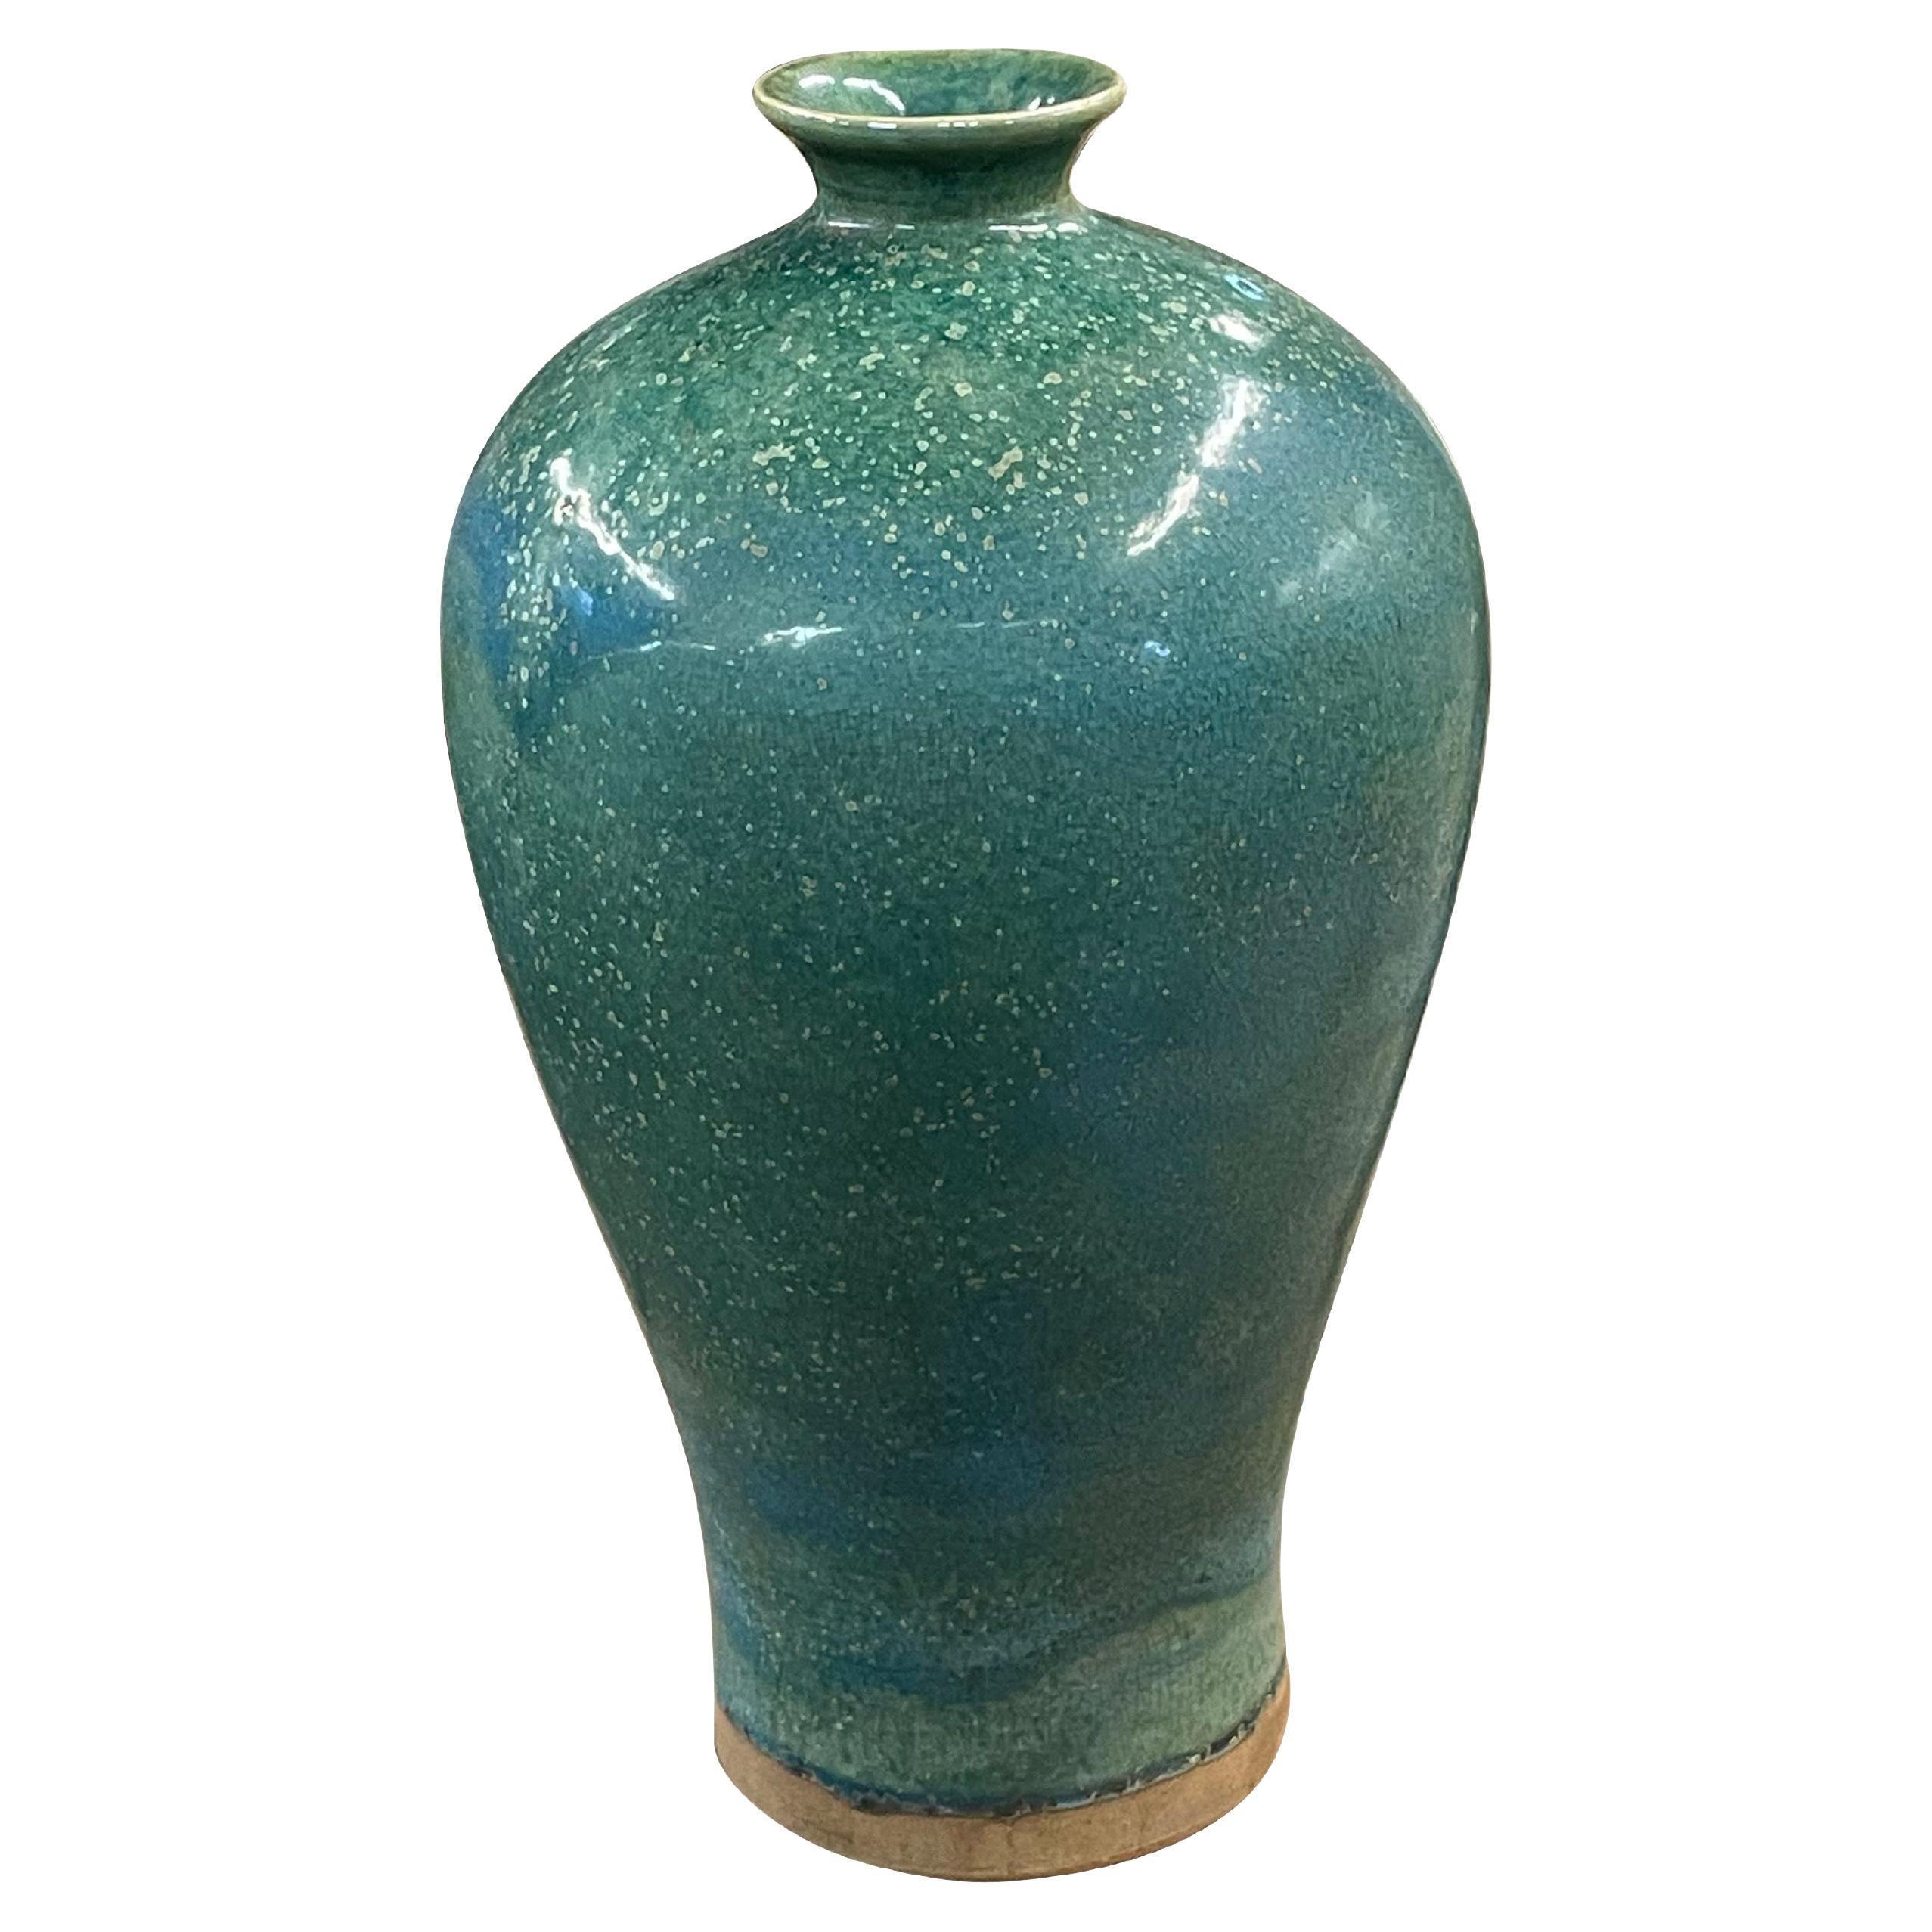 Vase chinois contemporain en céramique turquoise avec glaçure mouchetée décorative.
Peut contenir de l'eau.
Fait partie d'une grande collection.